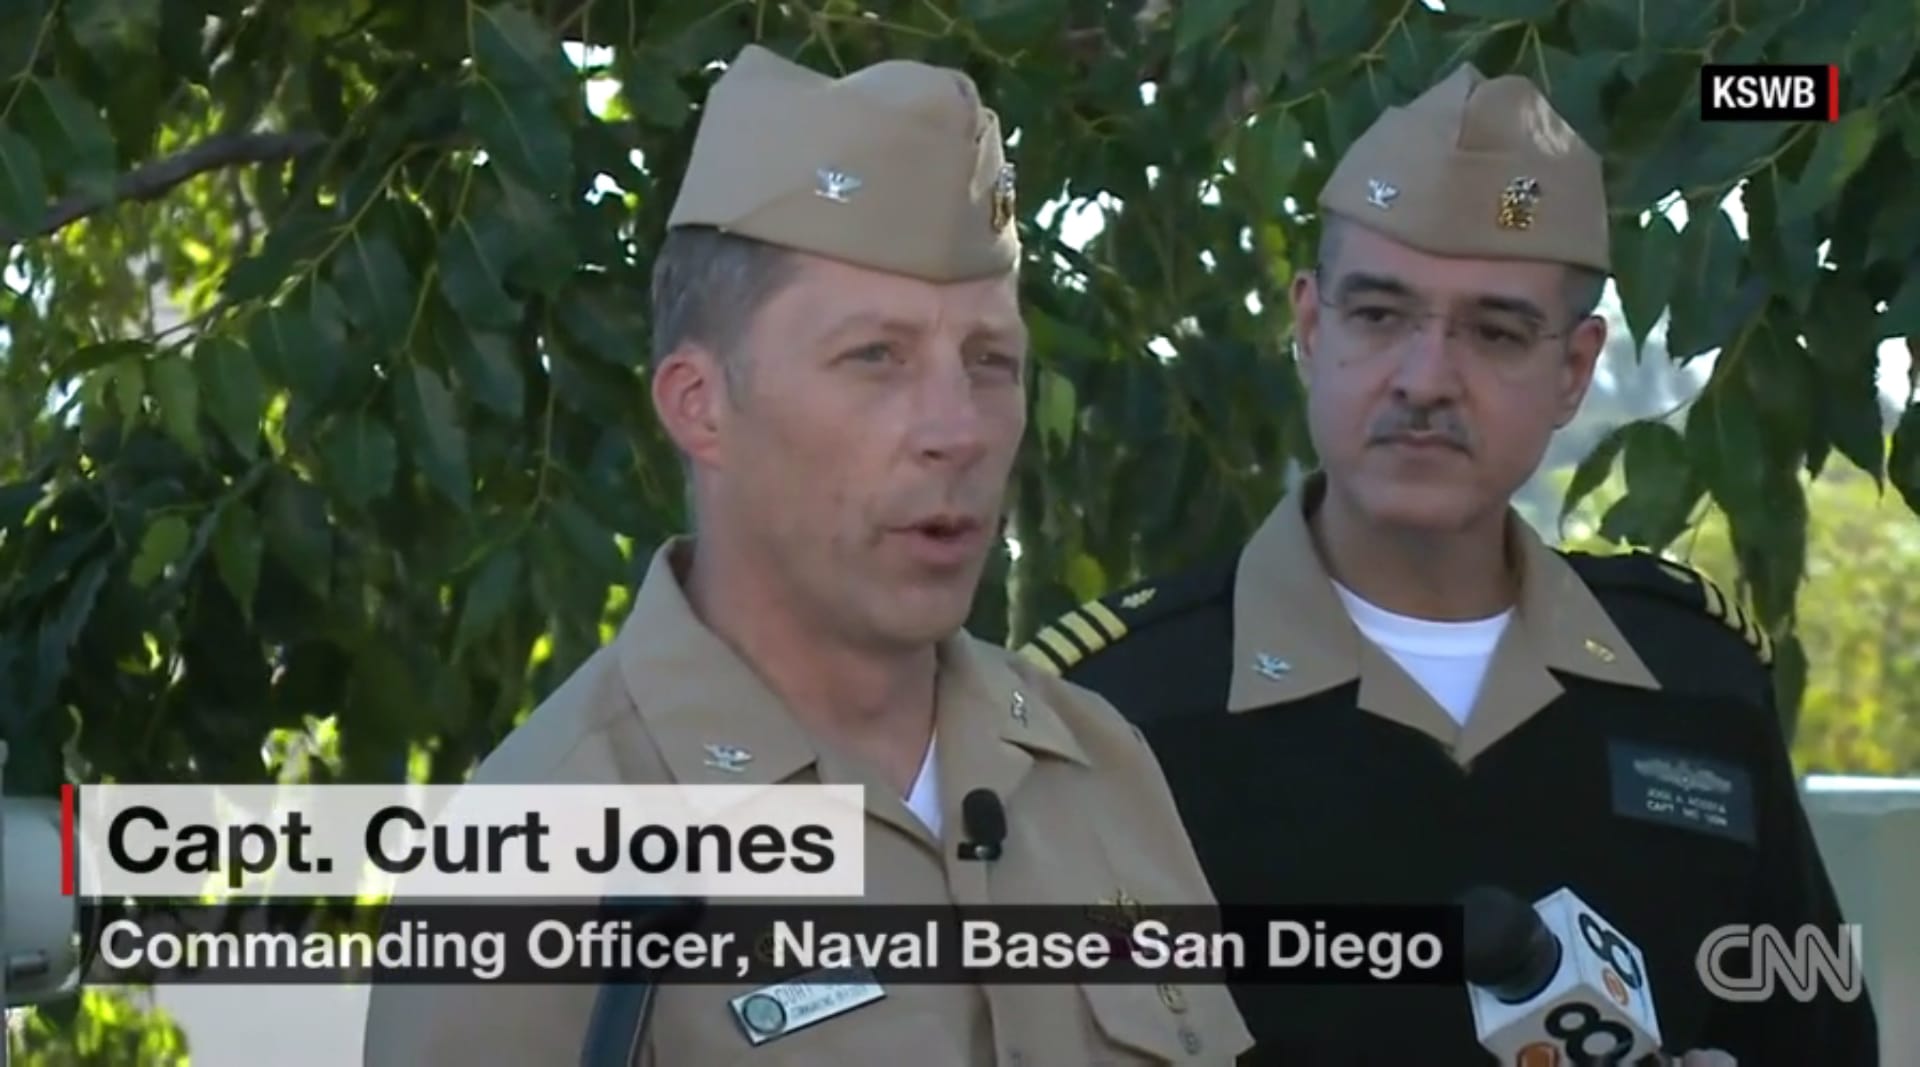 البحرية الأمريكية: بلاغ إطلاق النار في المركز الطبي بسان دييغو كان إنذارا كاذبا